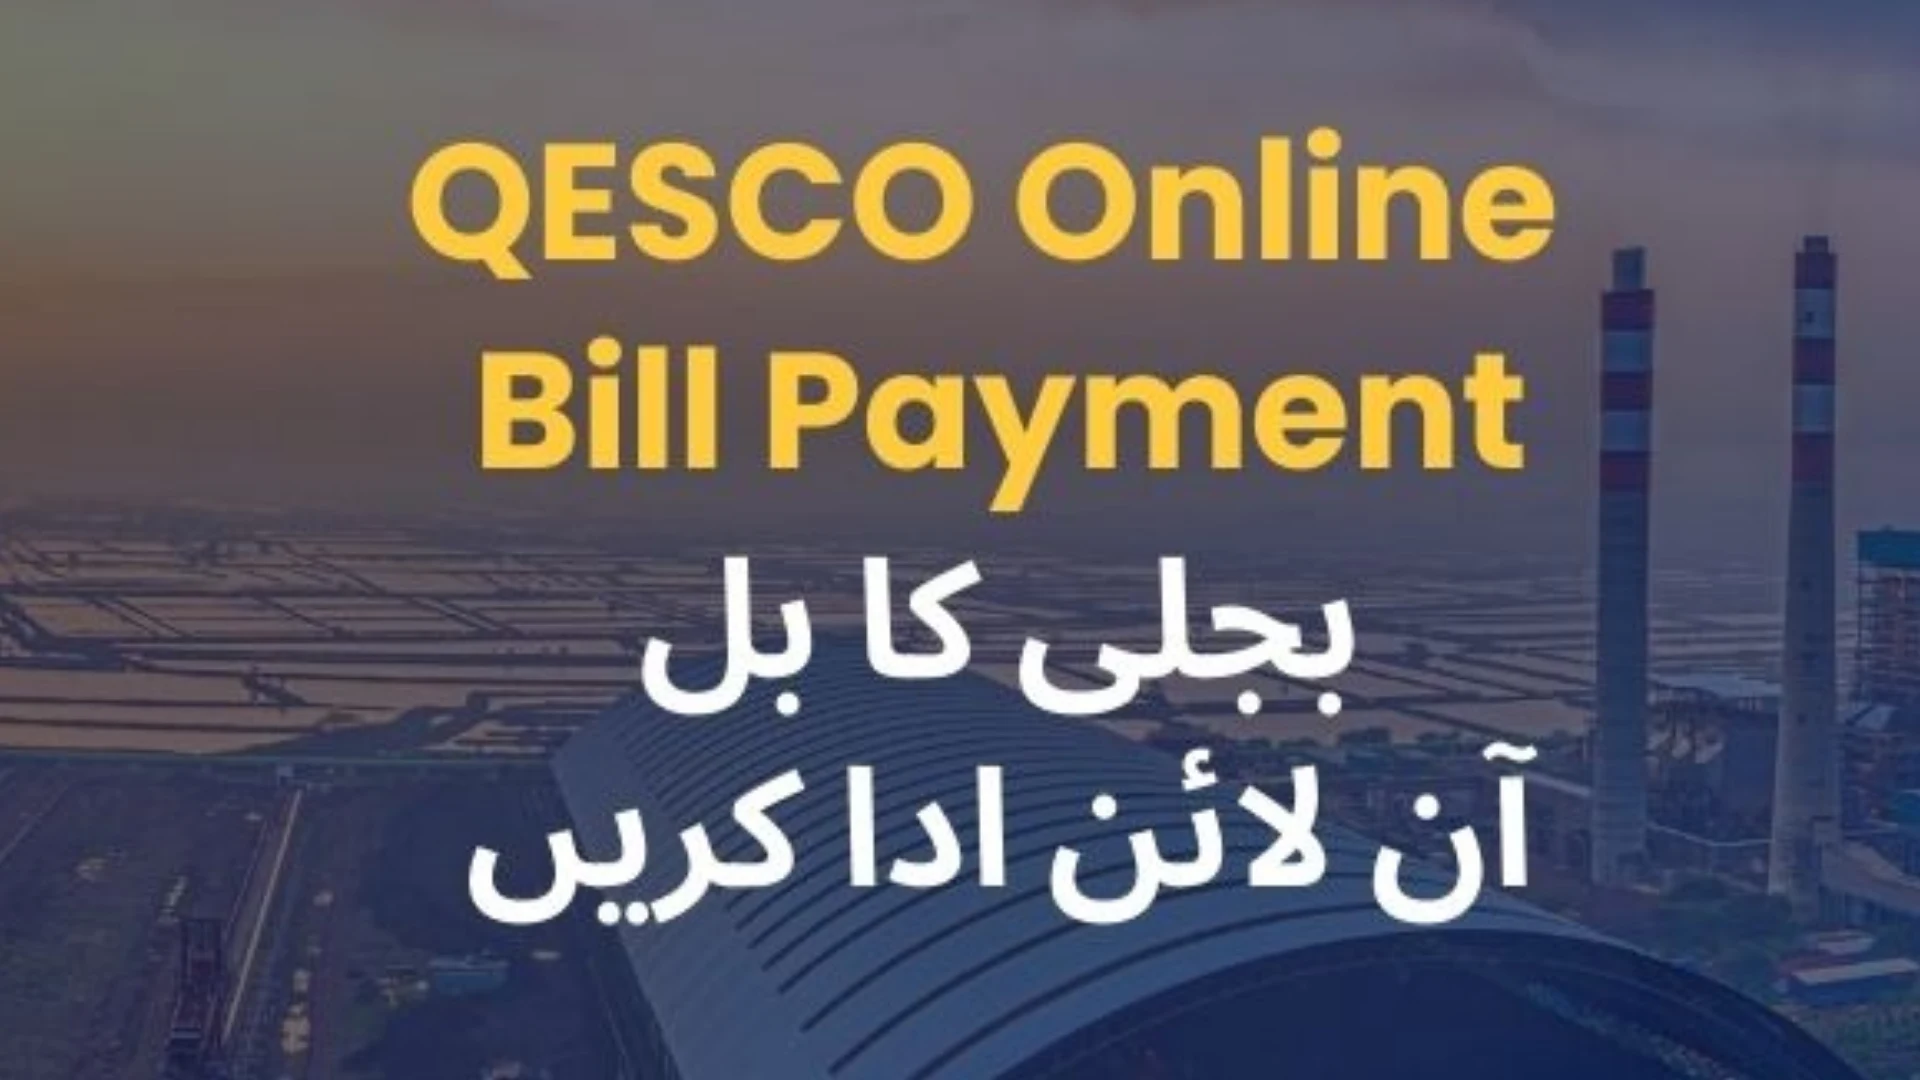 Online payment of QESCO Bill